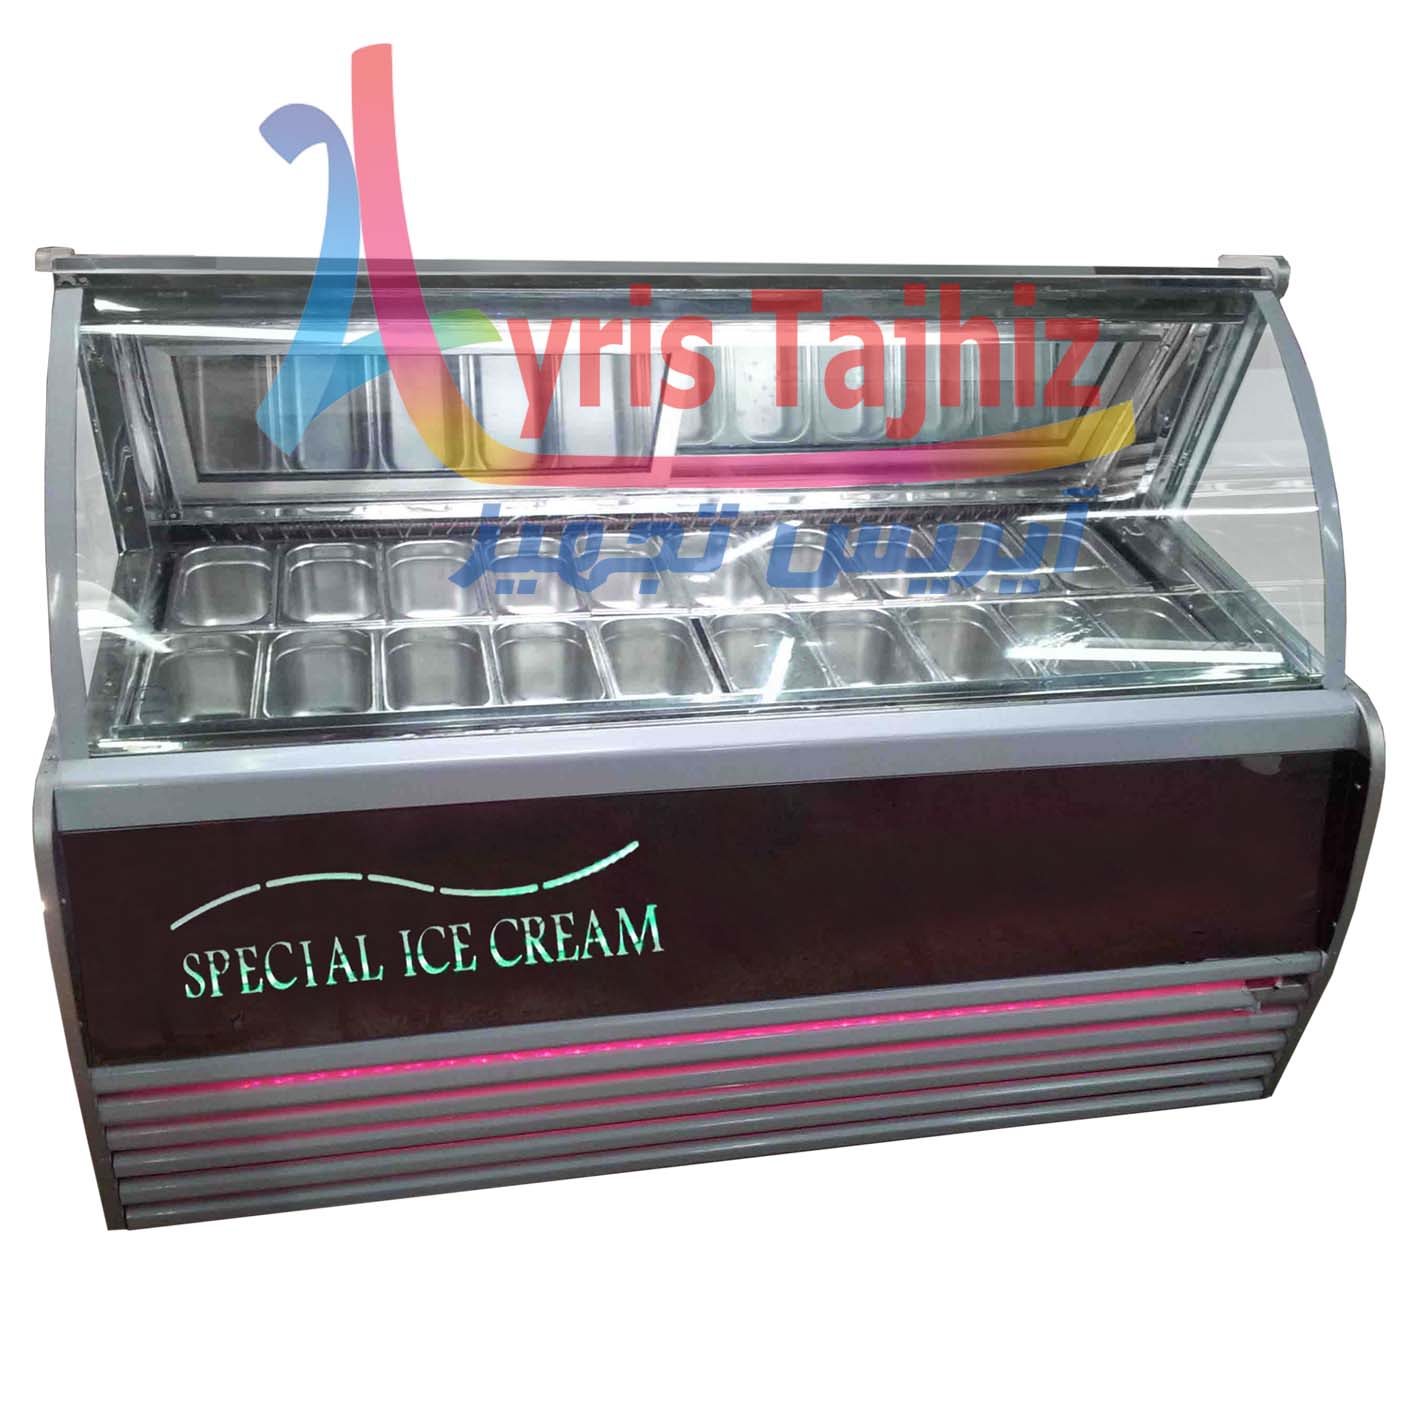 تاپینگ بستنی قیمت تاپینگ بستنی فروش تاپینگ بستنی یخچال بستنی خرید یخچال بستنی 09128599078